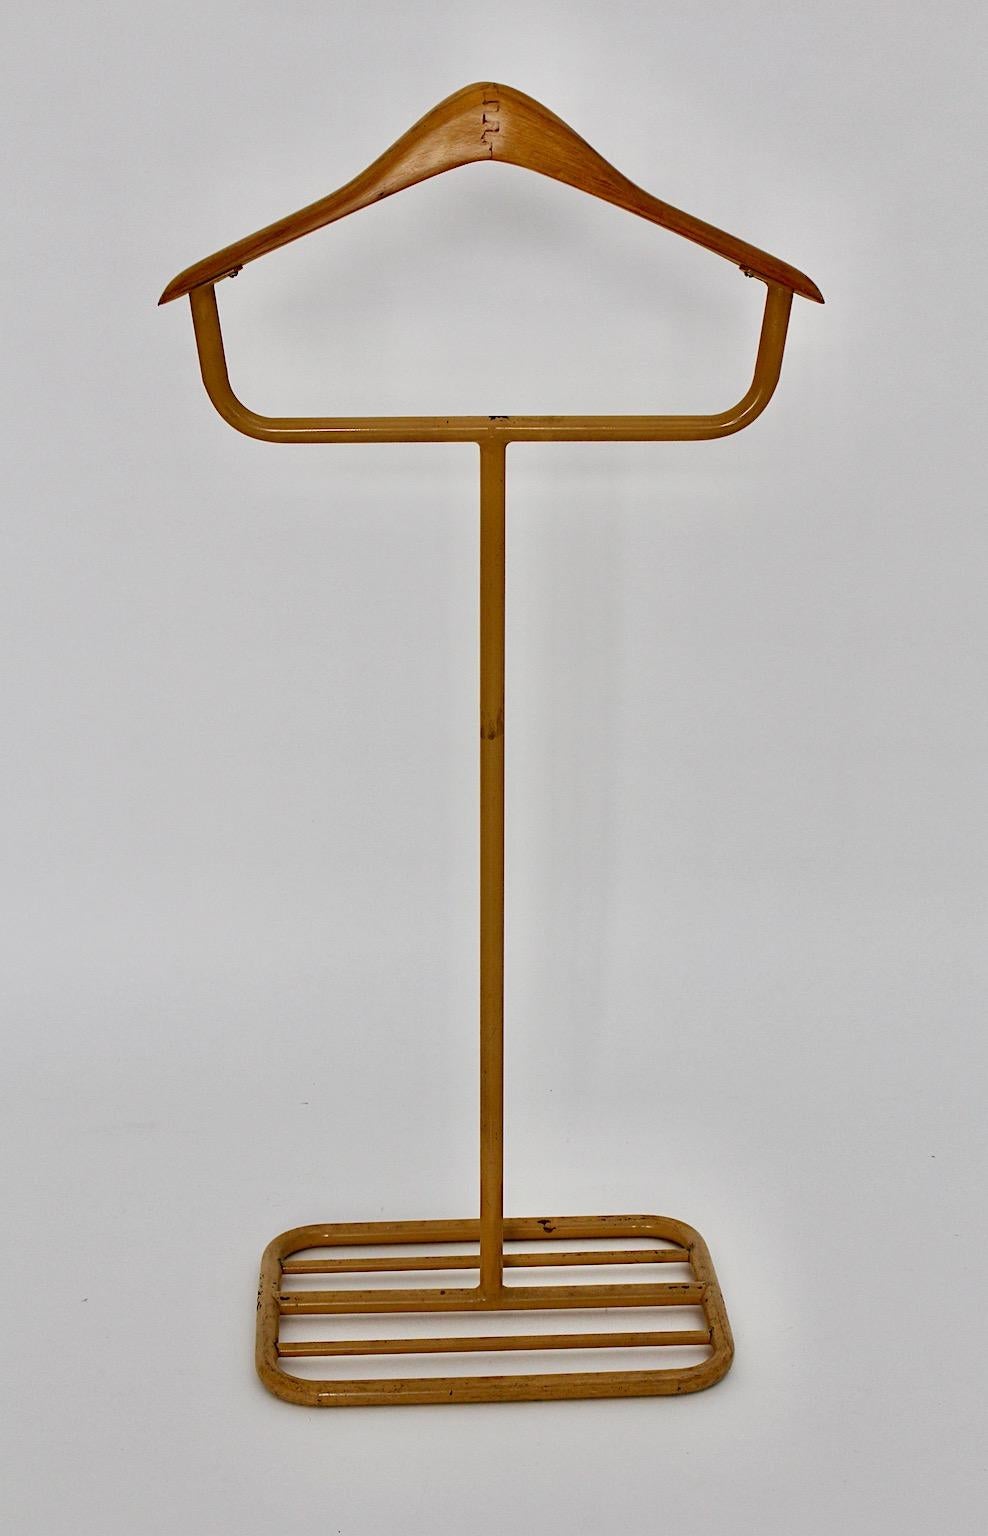 Porte-manteau ou valet de chambre Art déco allemand de l'ère Bauhaus en tube d'acier et hêtre de couleur jaune foncé, Allemagne des années 1930.
Un magnifique valet ou porte-manteau de style Bauhaus fabriqué à partir de tube d'acier laqué et d'un